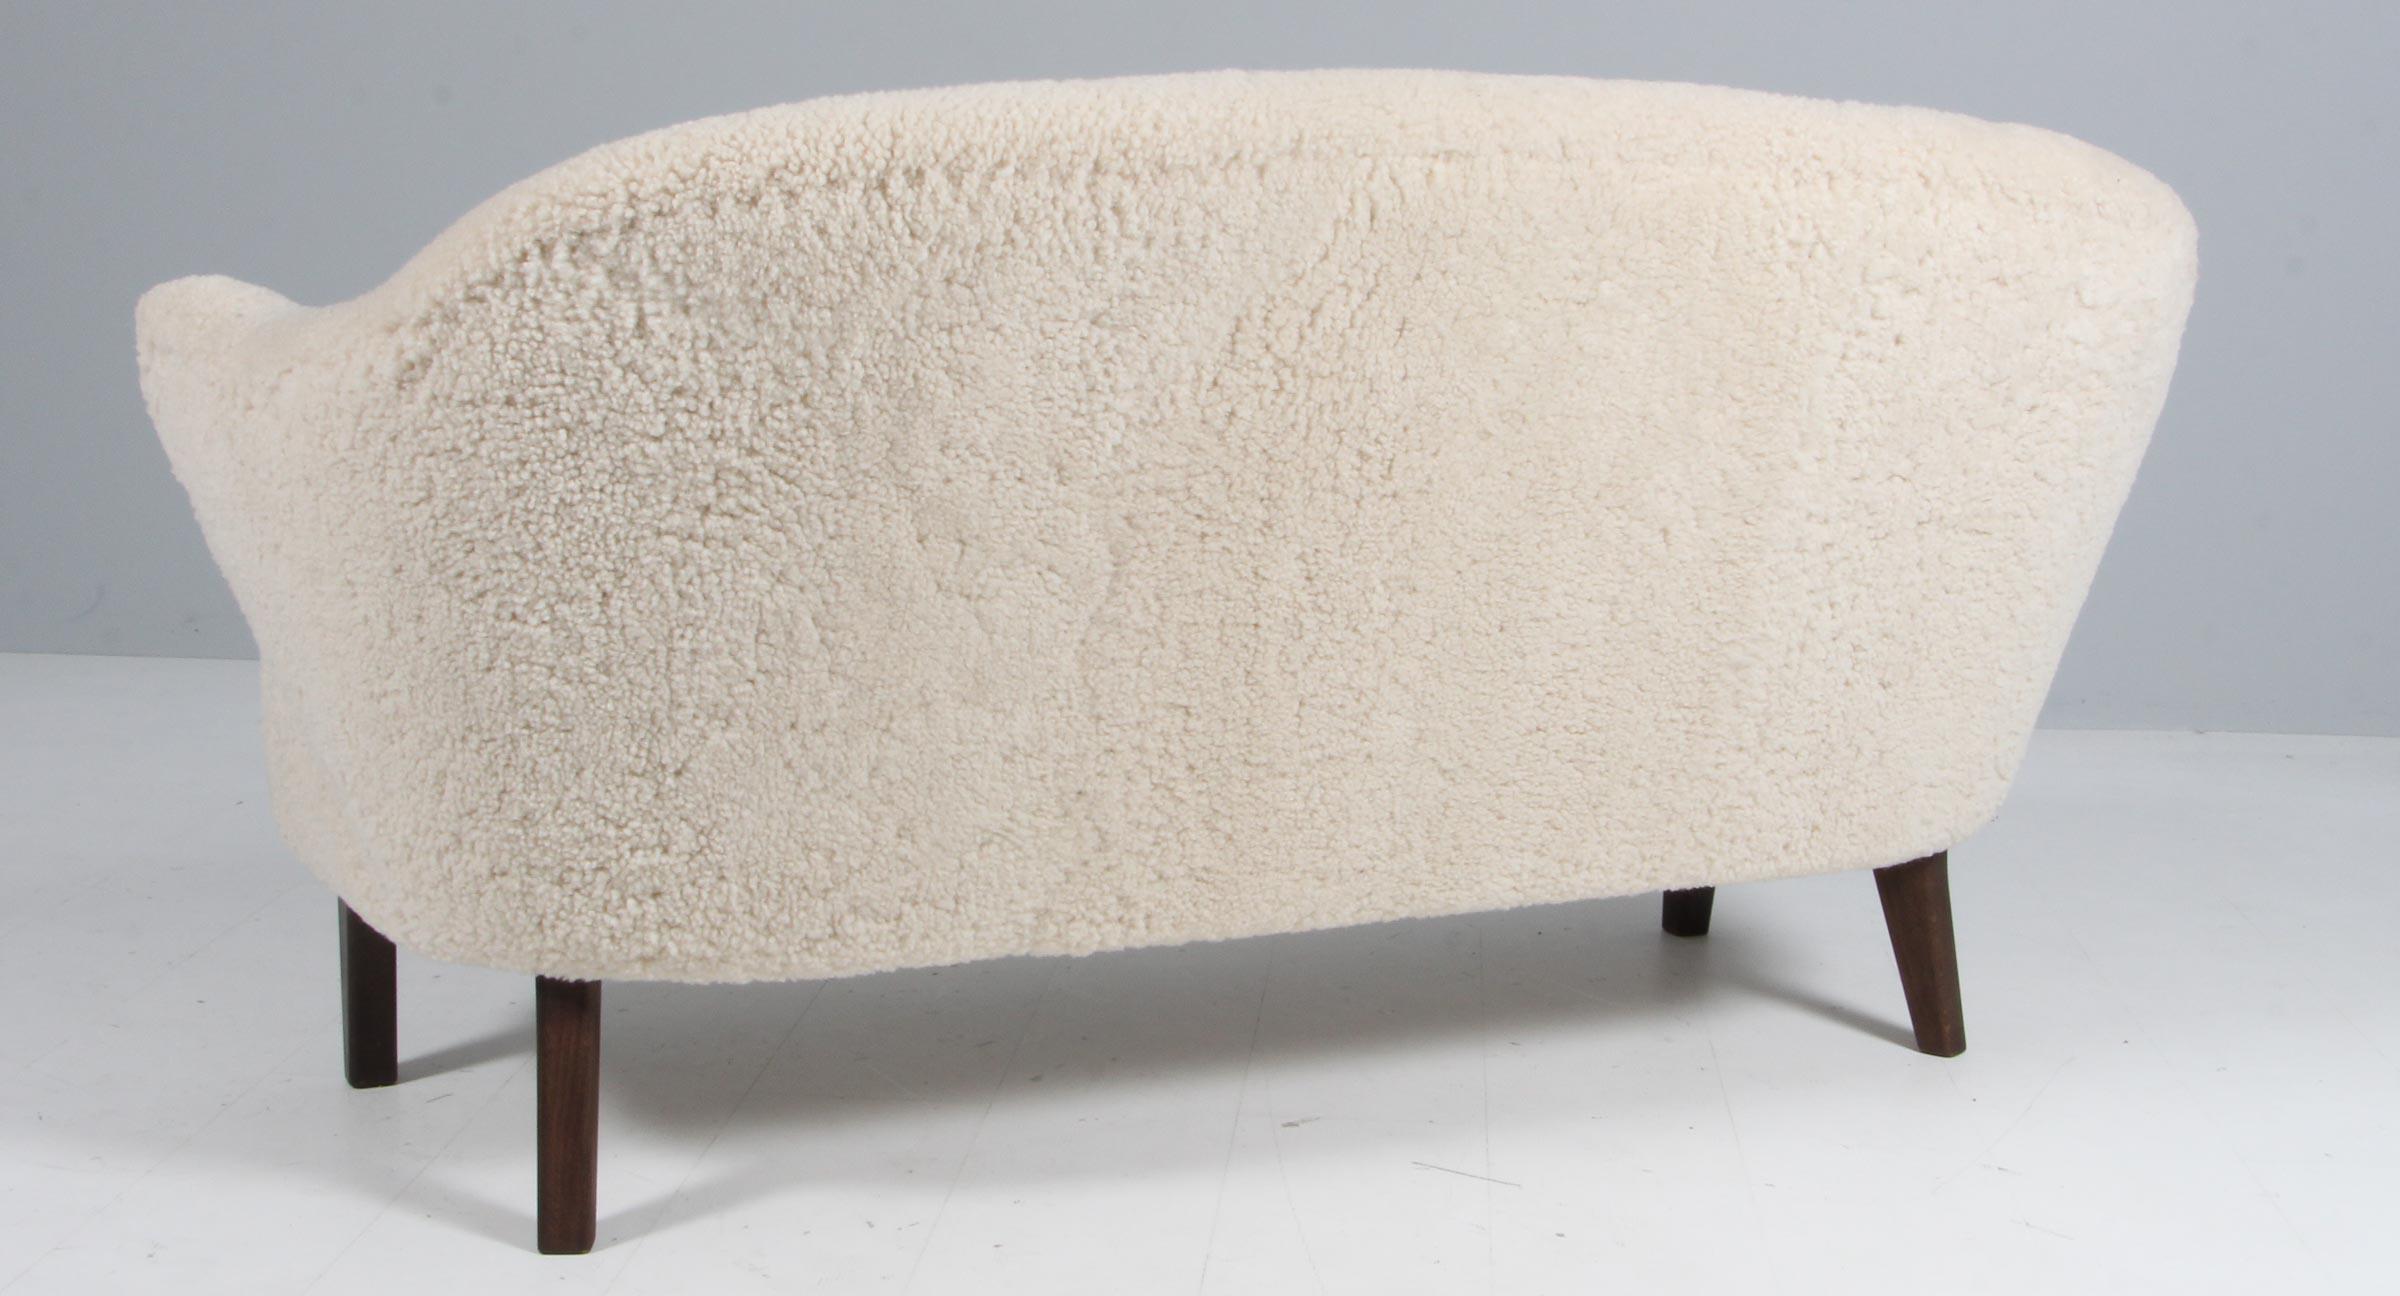 Flemming Lassen Zweisitzer-Sofa, original gepolstert mit Lammfell.

Beine aus geräucherter Eiche.

Modell Ingeborg, hergestellt von Audo.